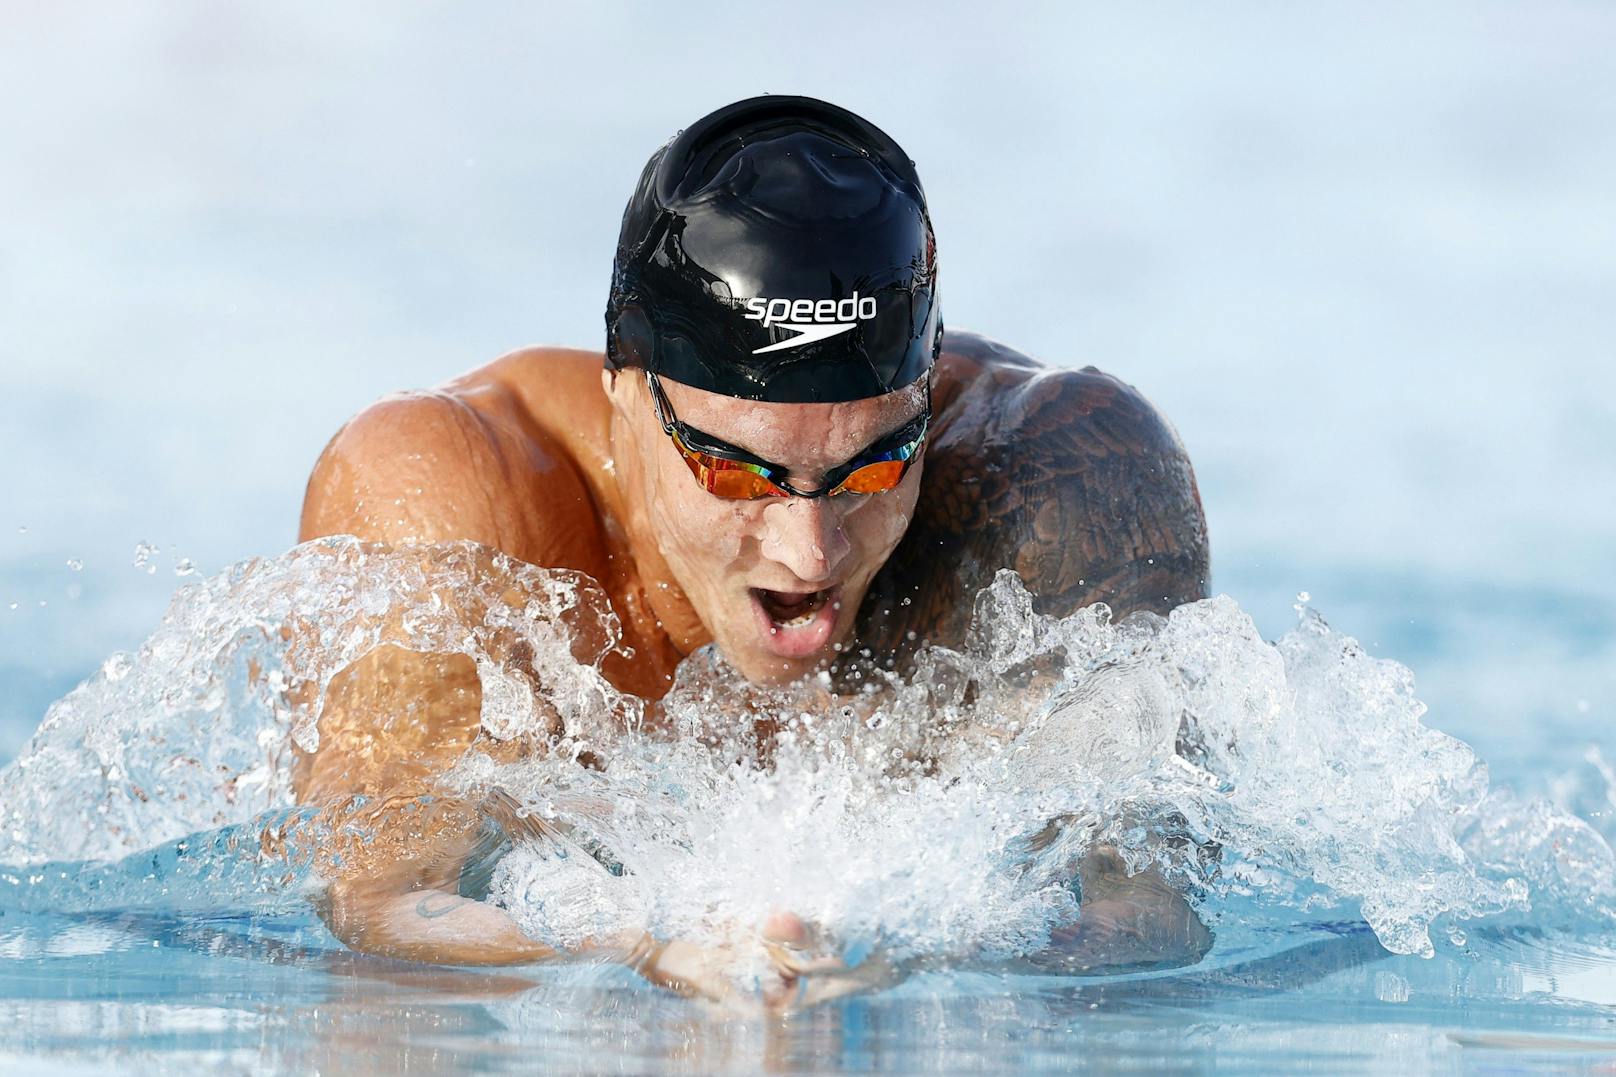 Der nächste US-Boy: Caleb Dressel. Der 24-Jährige machte sich bei der Schwimm-WM 2019 mit sechs Goldmedaillen zum Superstar. In Rio hatte er vor fünf Jahren schon zwei Mal Staffel-Gold geholt – als Teenager!  